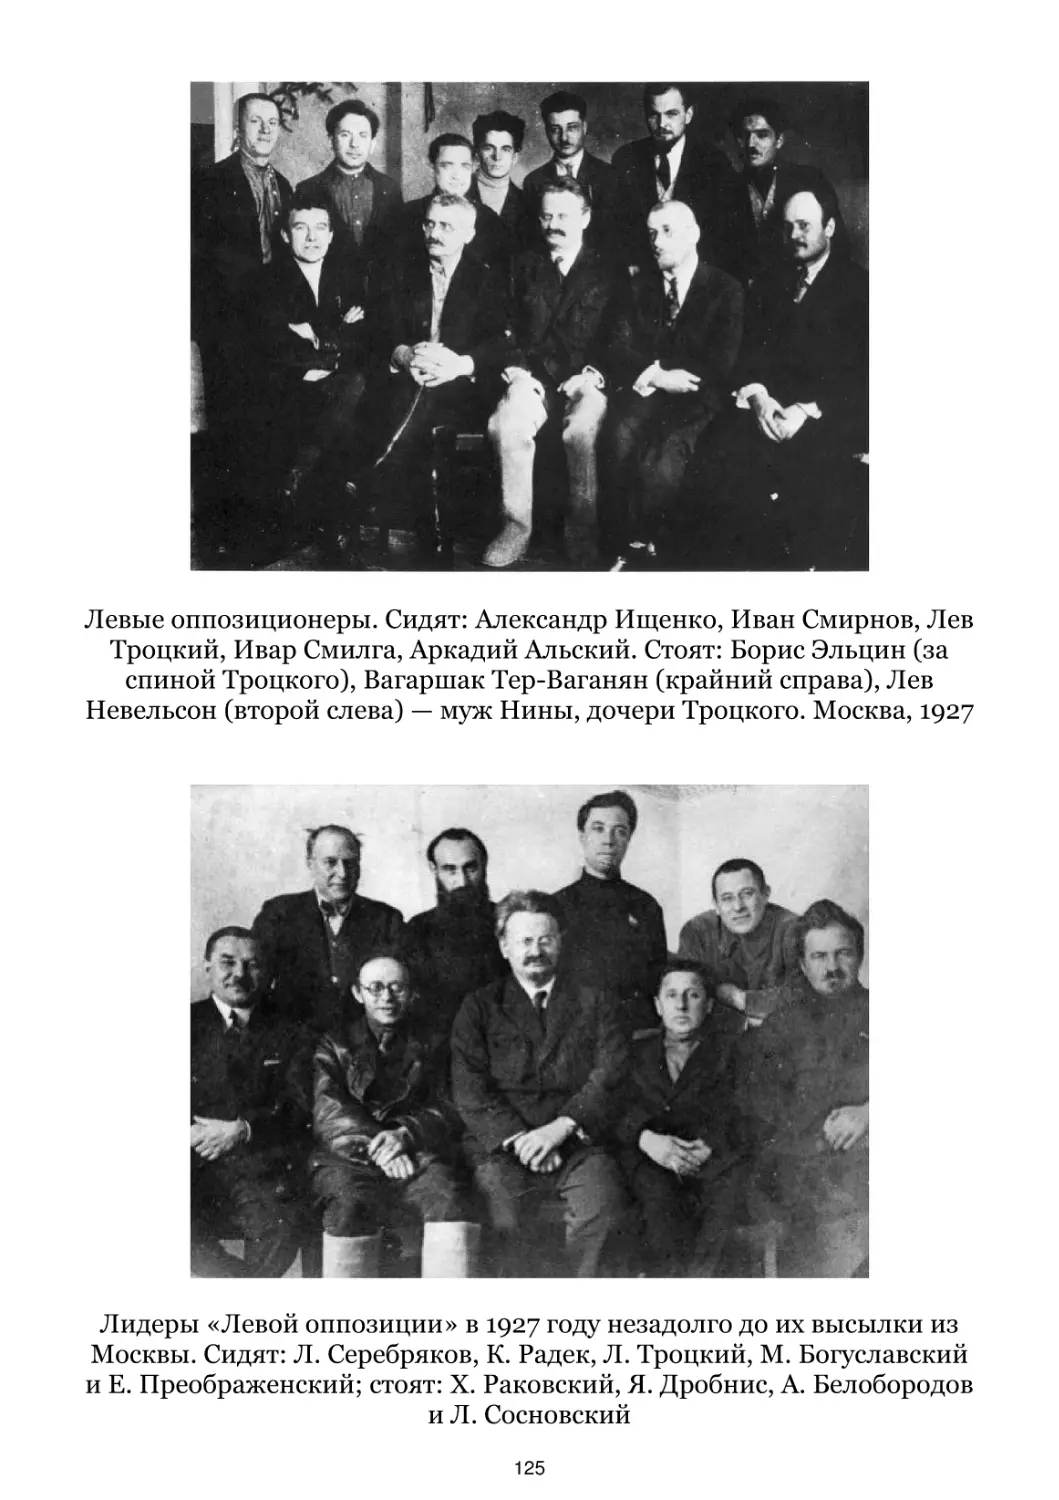 Левые оппозиционеры. Москва, 1927
Лидеры «Левой оппозиции» в 1927 году незадолго до их высылки из Москвы